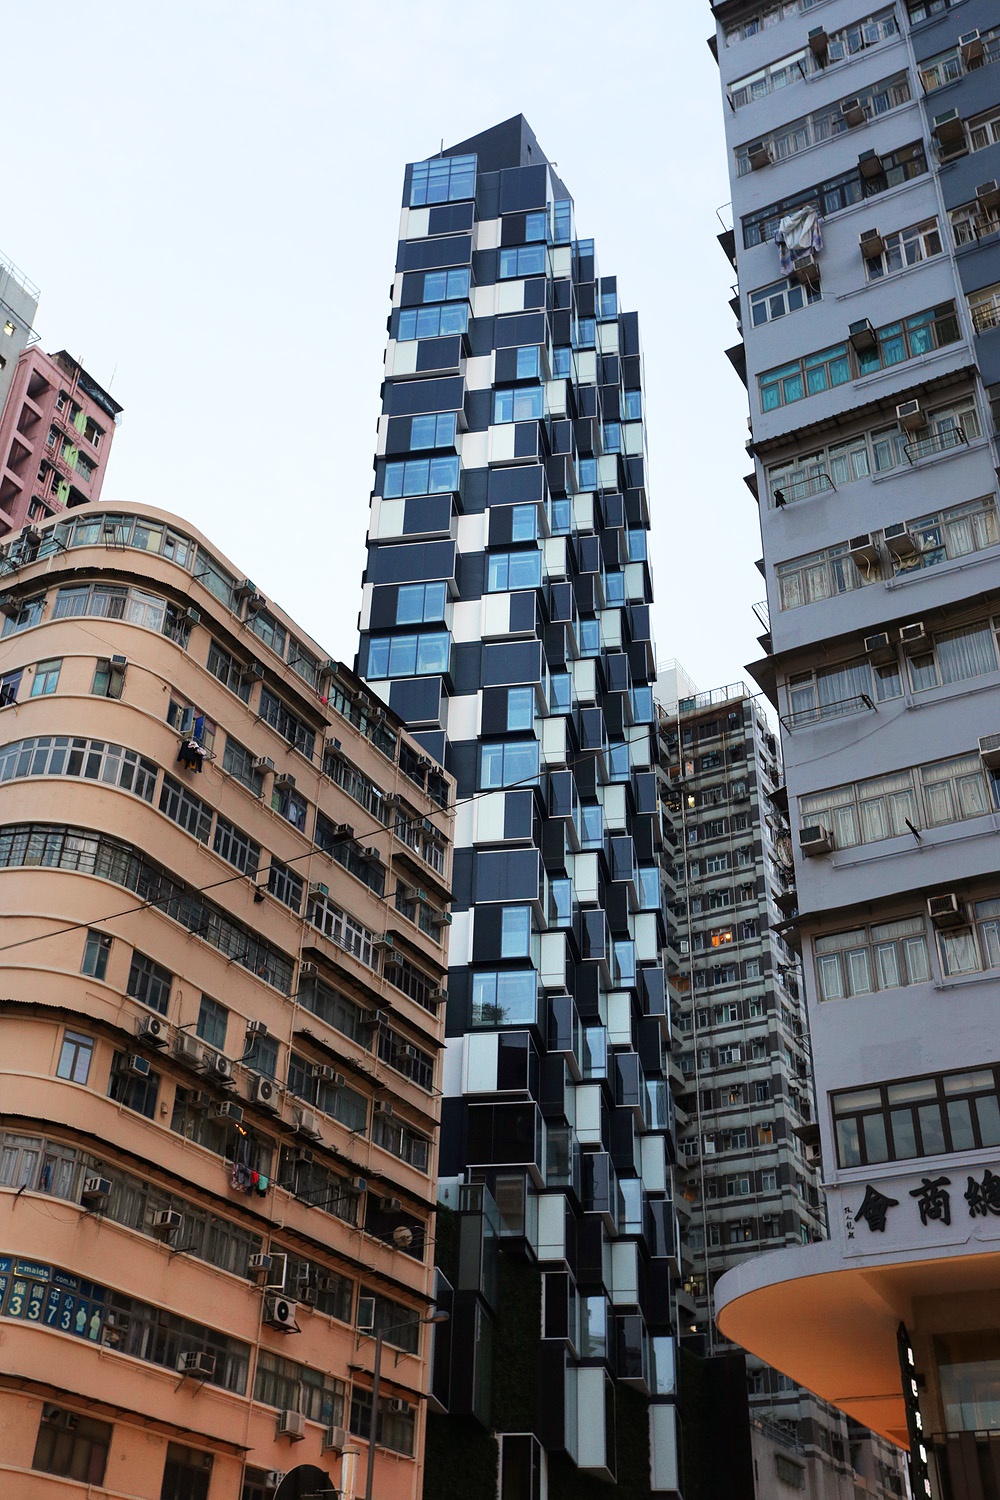 bill-hocker-a-very-original-building-residence-mong-kok-kowloon-hong-kong-2017